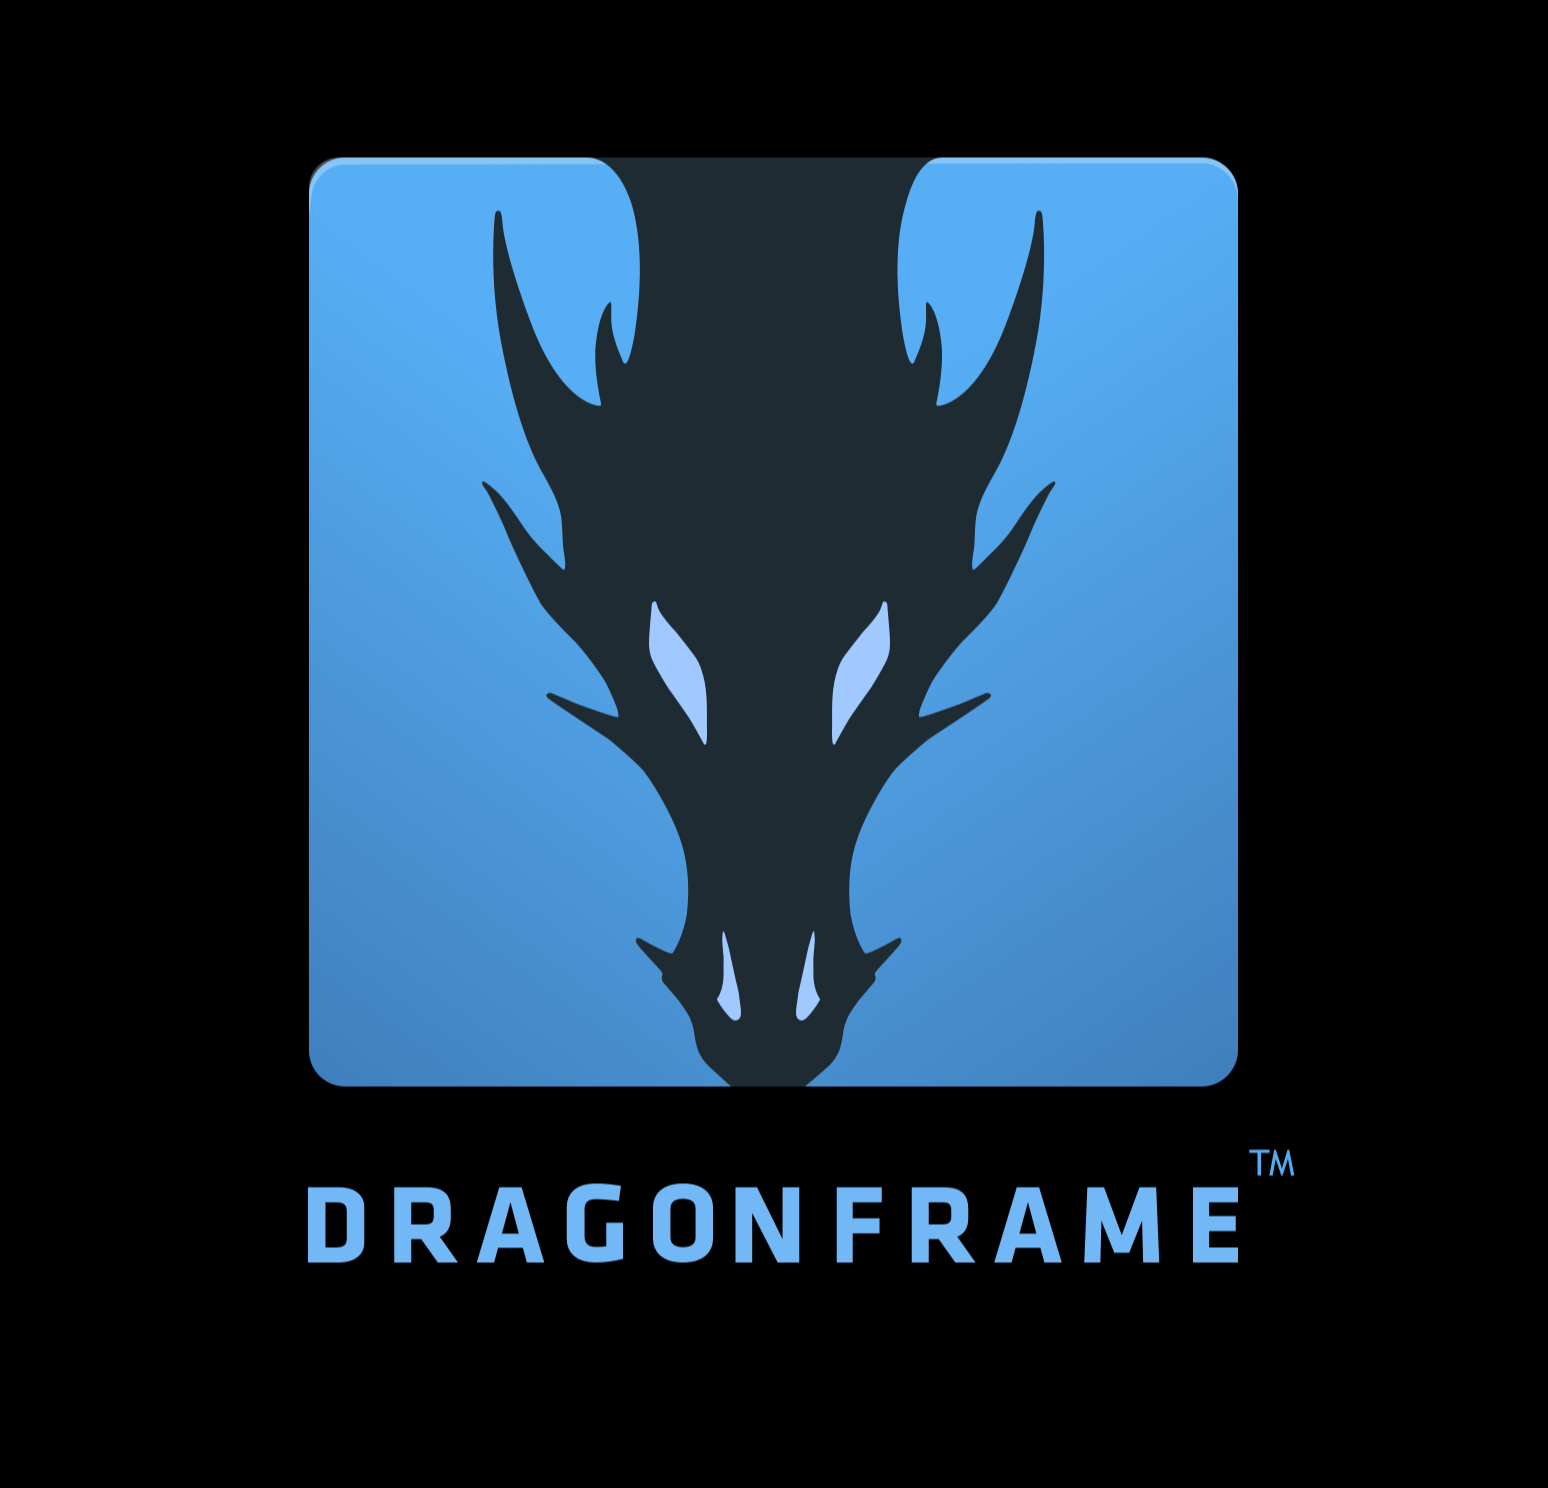 dragonframe serial number online